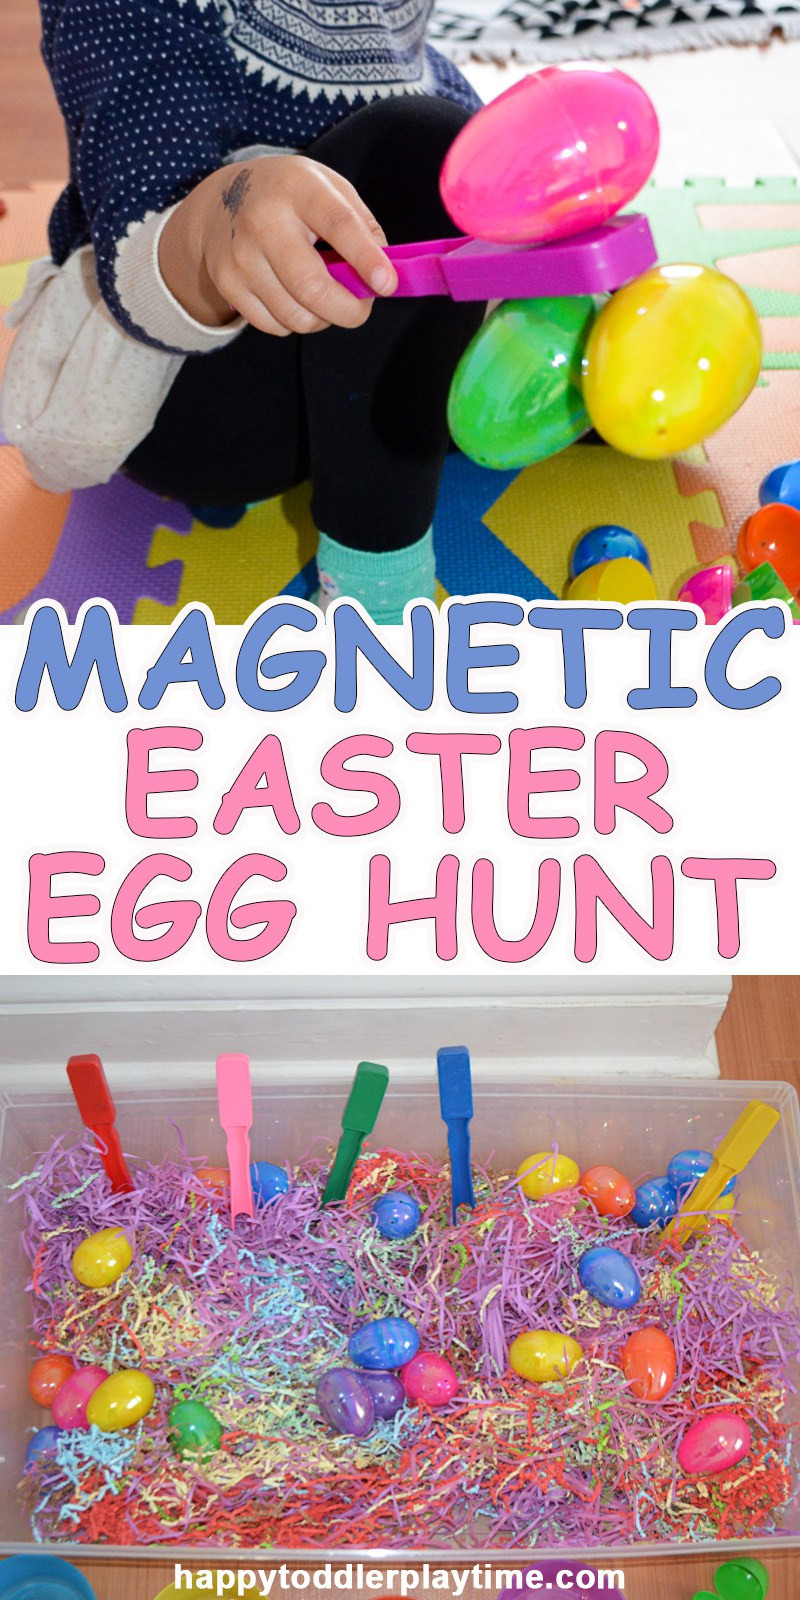 Easter Egg Hunt Ideas For Kids
 Creative Easter Egg Hunt Ideas That Will Keep Kids Hopping